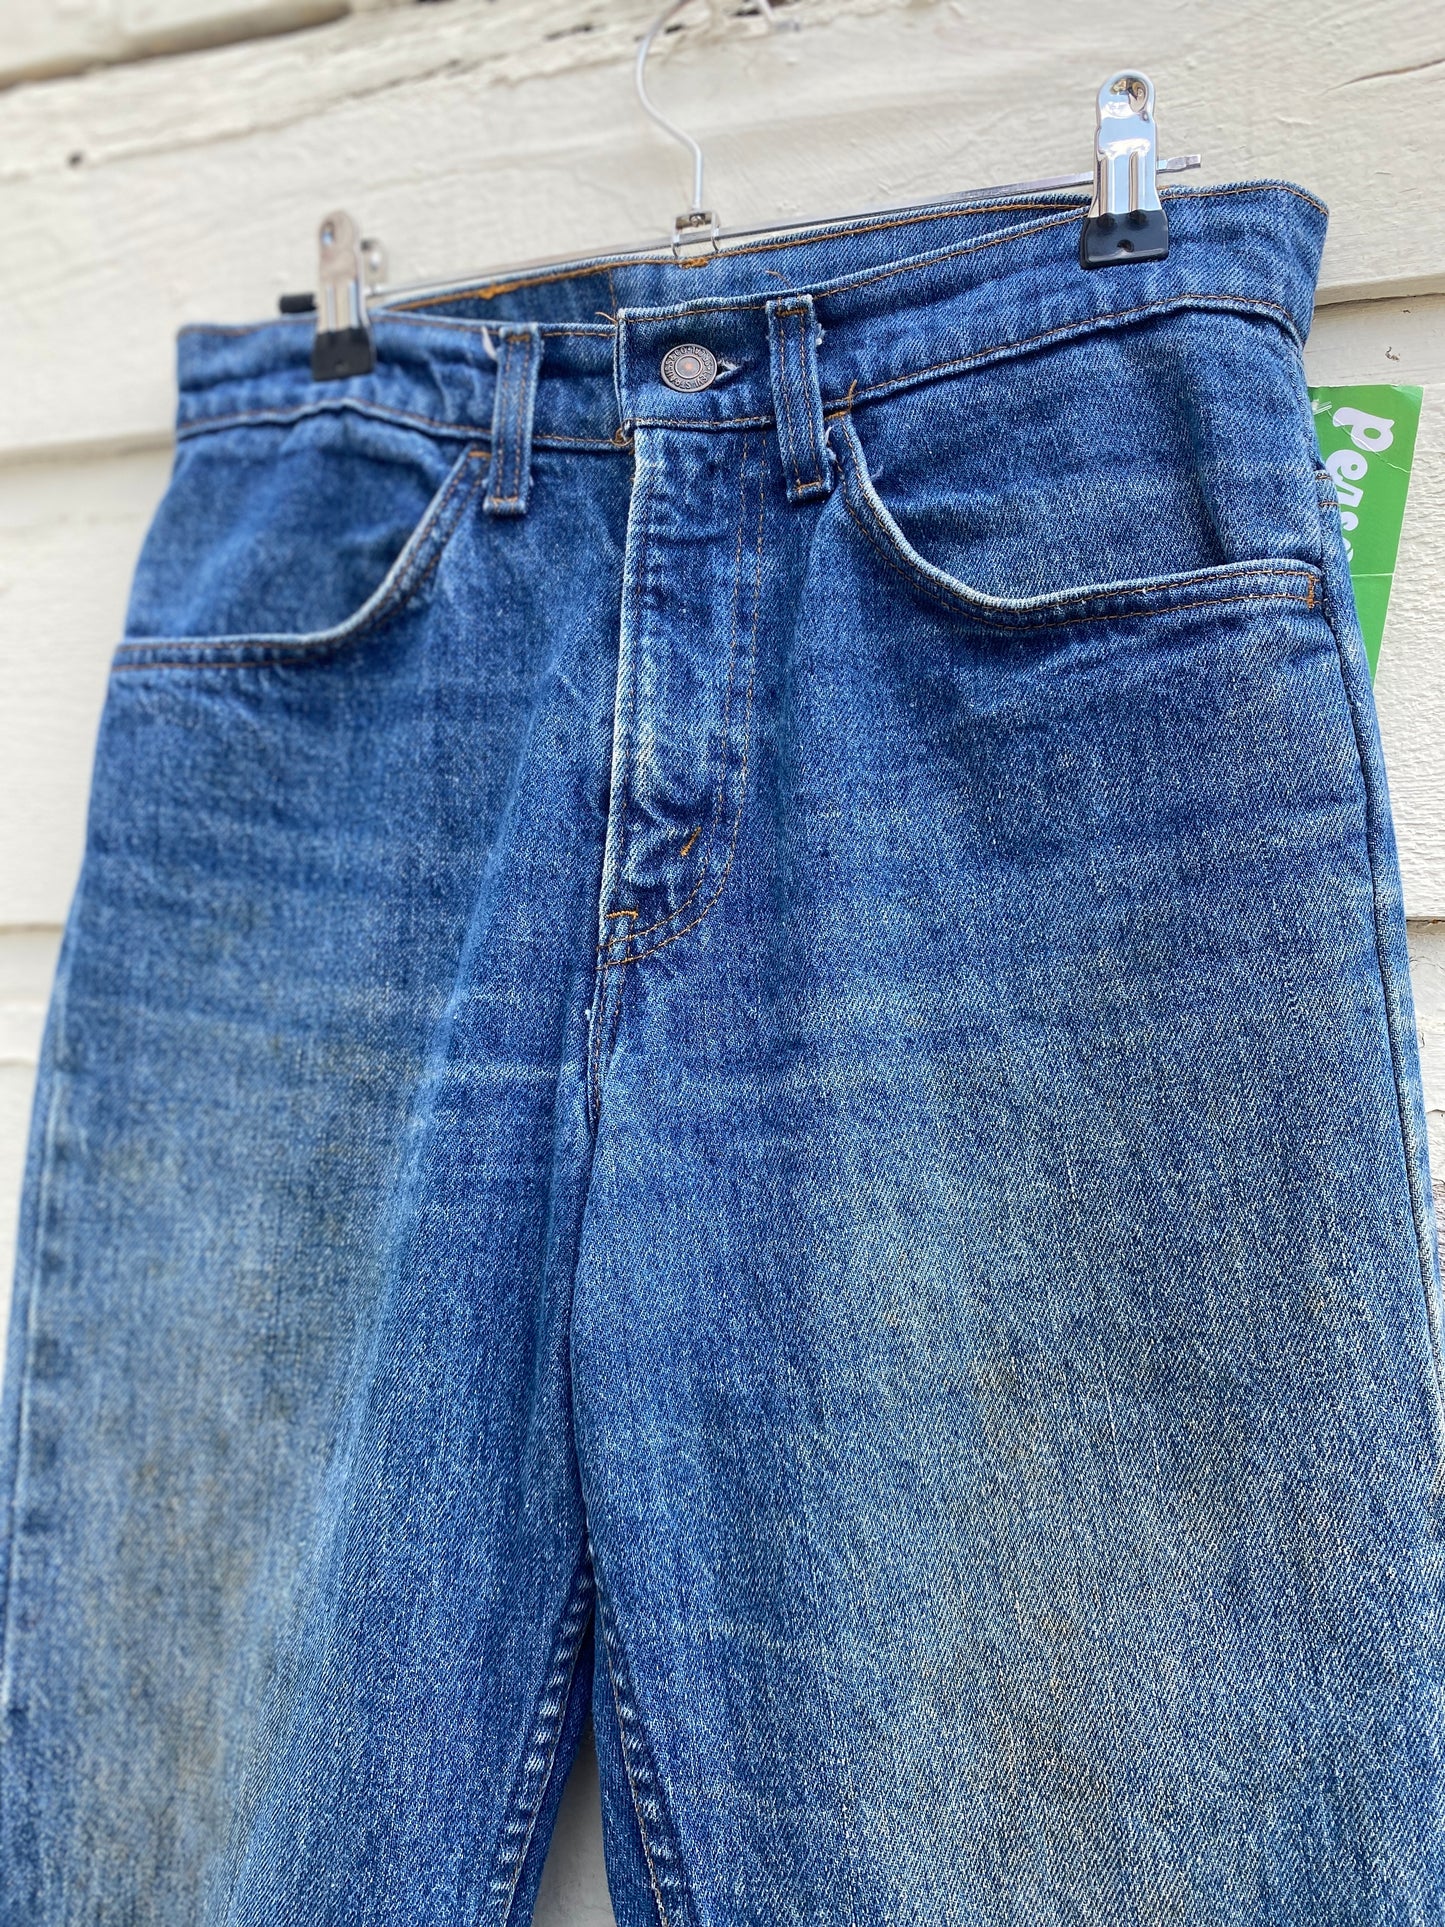 1970s Levi’s 519 dark wash distressed jeans 27in waist